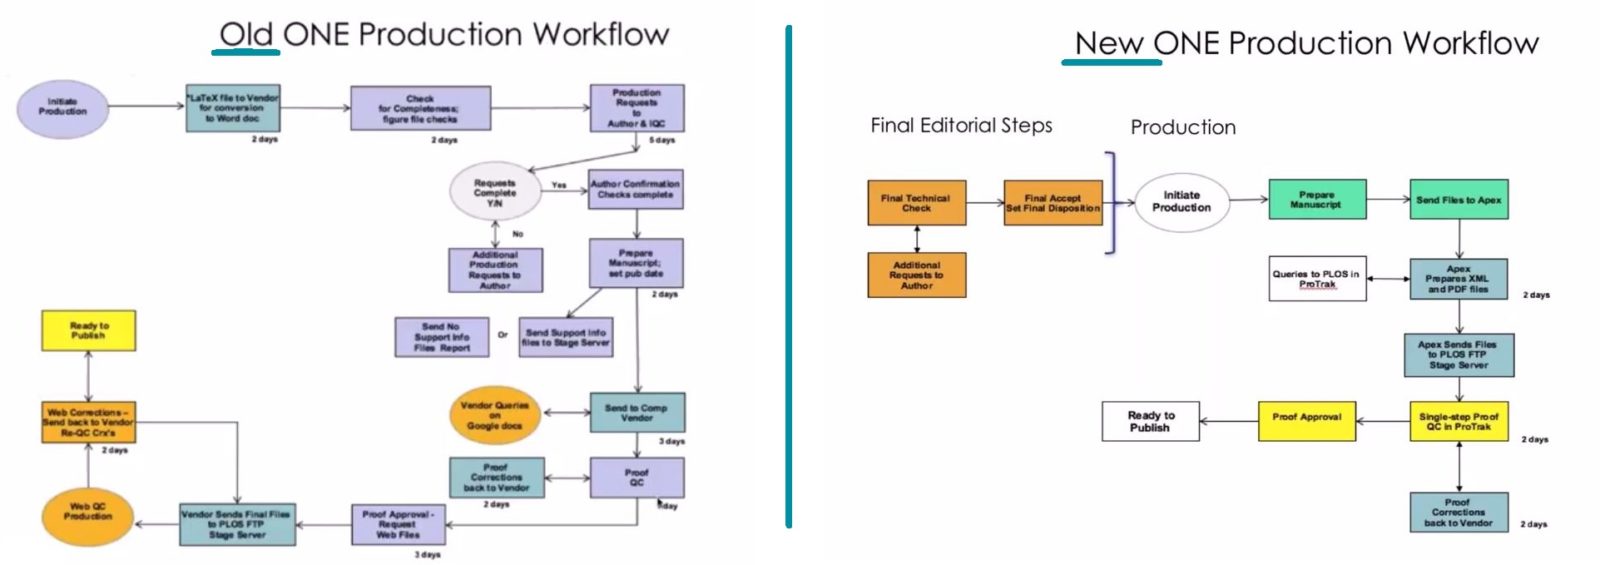 Plos Workflow Transformation Diagram Apex Covantage. 